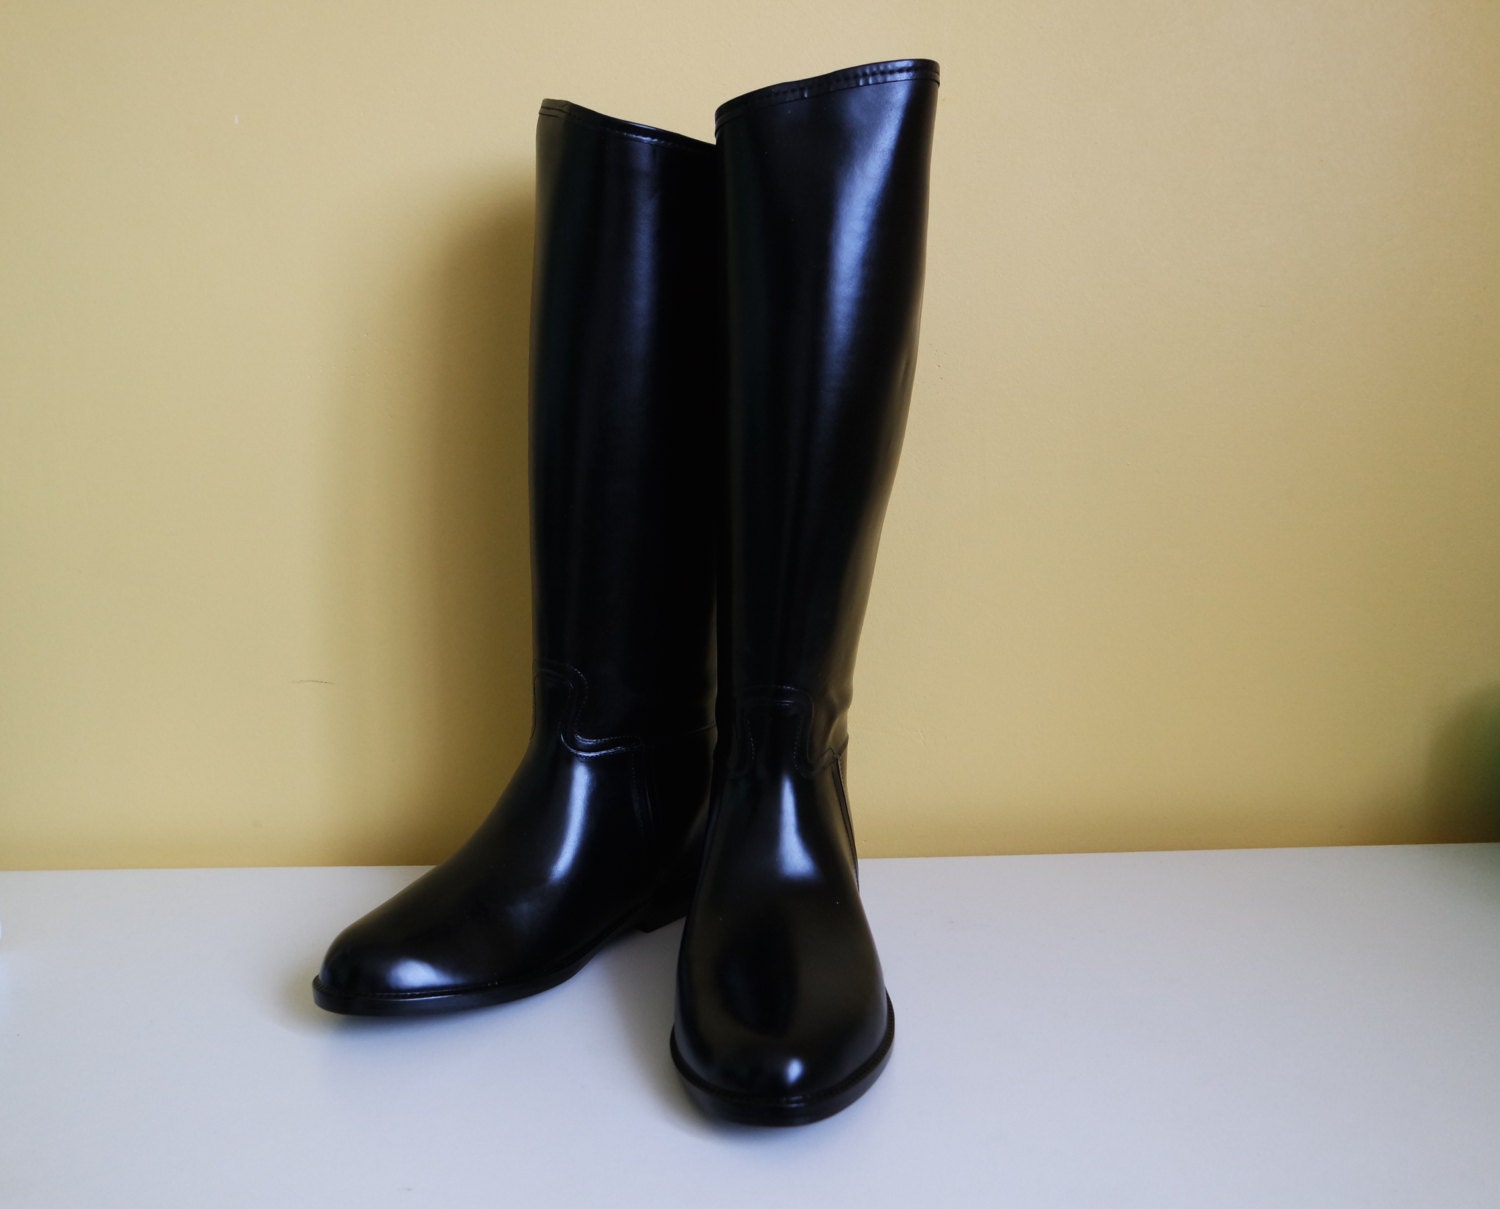 Wellington Boots Vintage Rubber Boots Women's Rain Boots